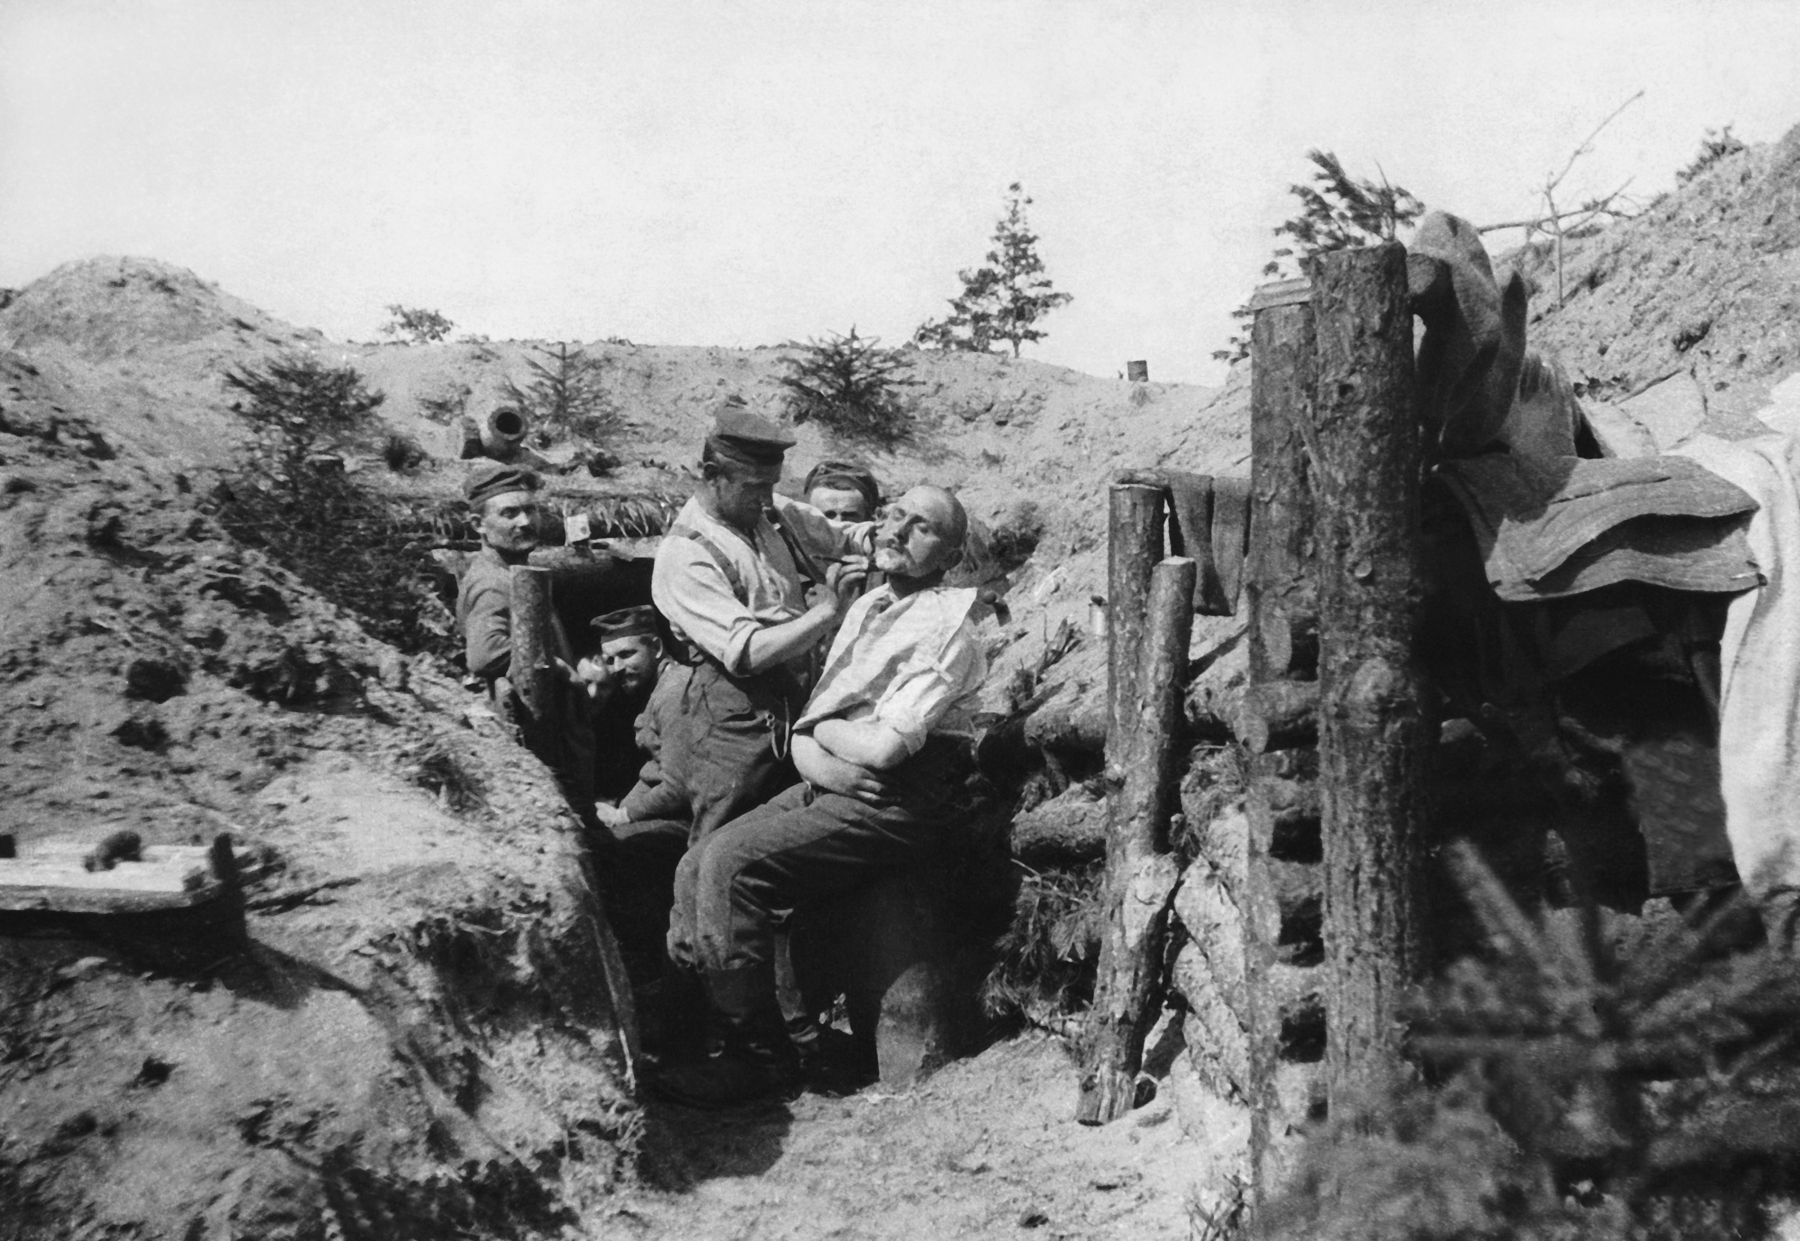 Fotografia em preto e branco. Homens dentro das trincheiras. Um deles está aparando a barba do outro, que está sentado. Ao redor, estruturas com toras de madeira na base das trincheiras.